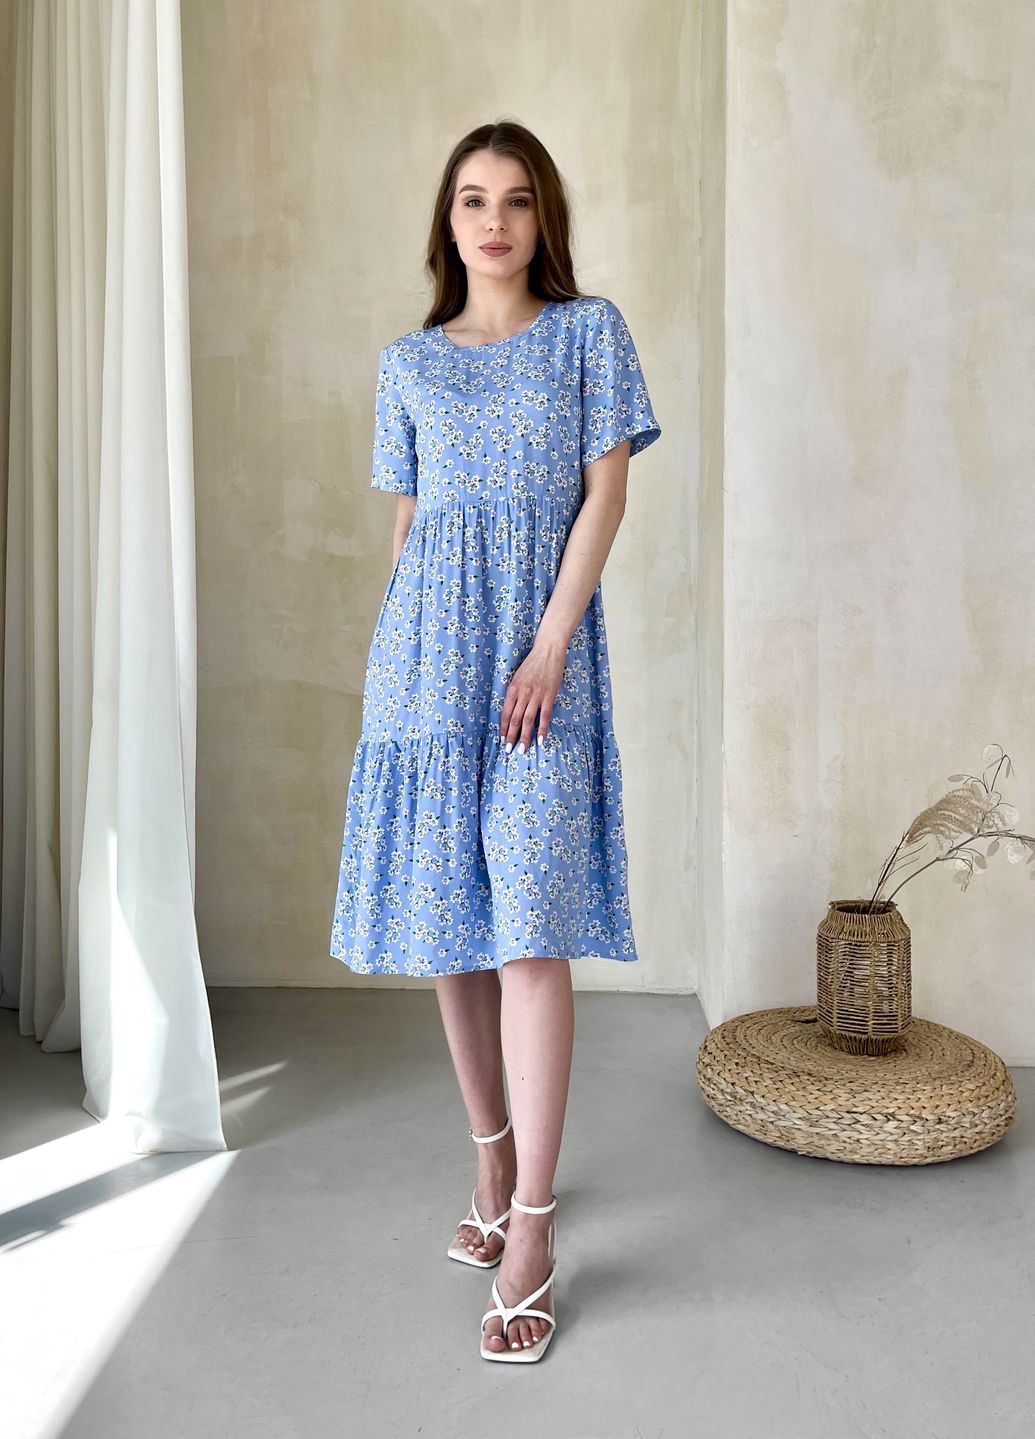 Купить Женское платье до колена с цветочным принтом и коротким рукавом голубое Merlini Ферро 700000262, размер 42-44 (S-M) в интернет-магазине